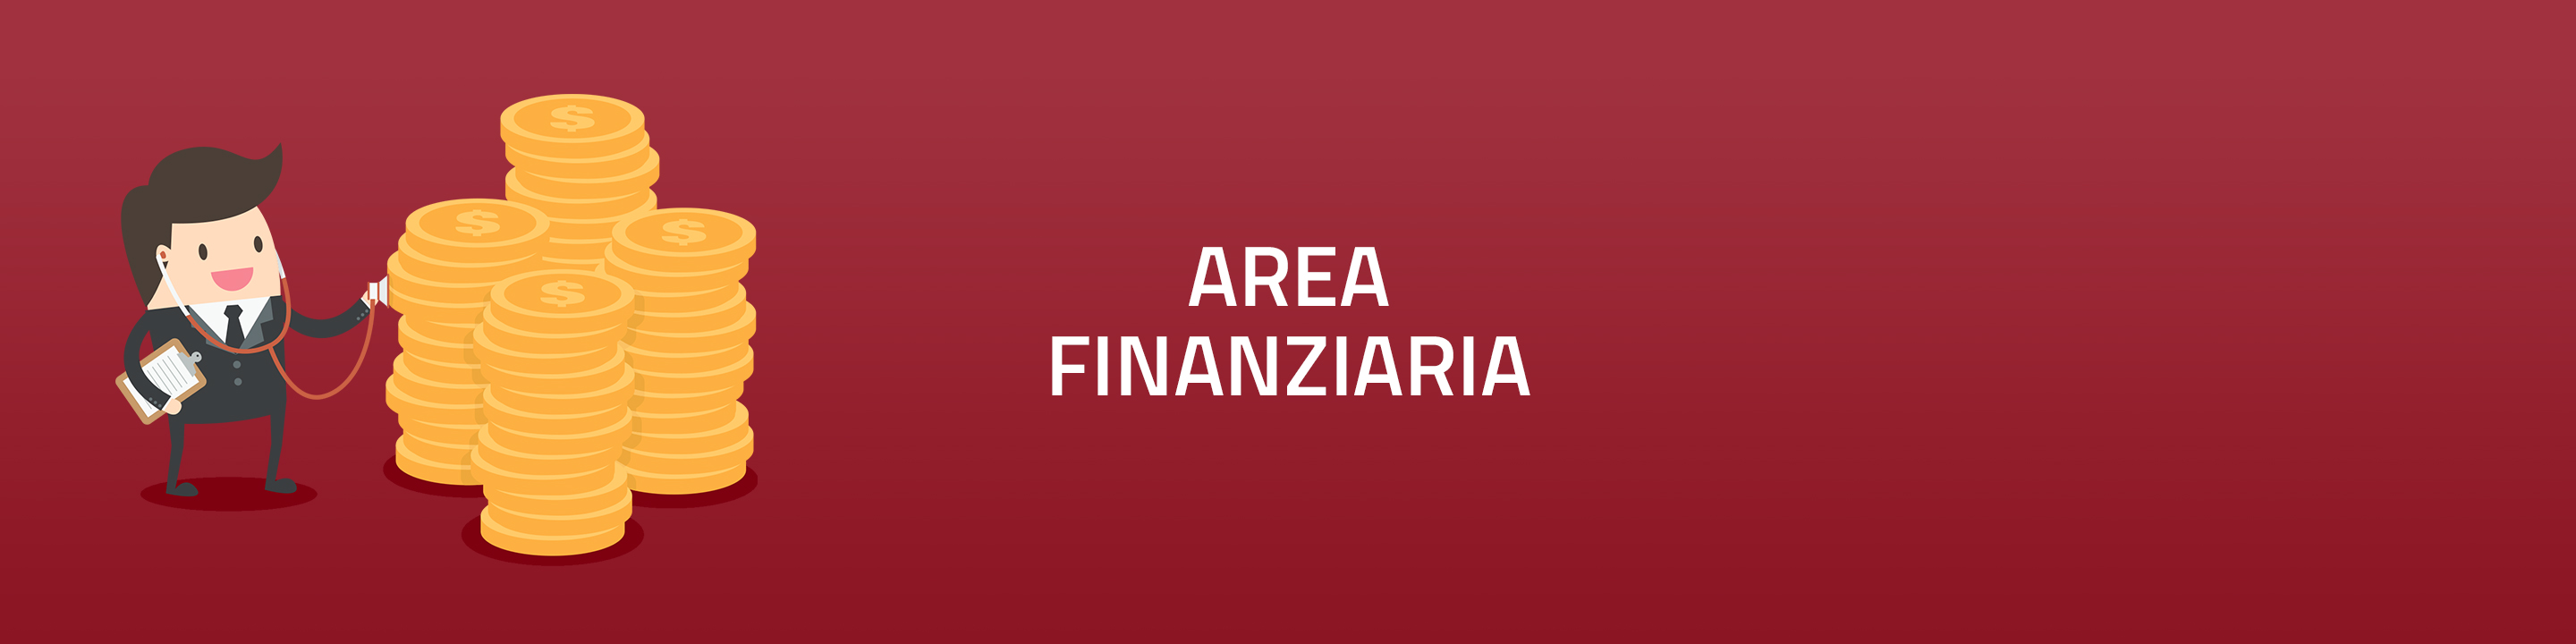 banner-area-finanziaria